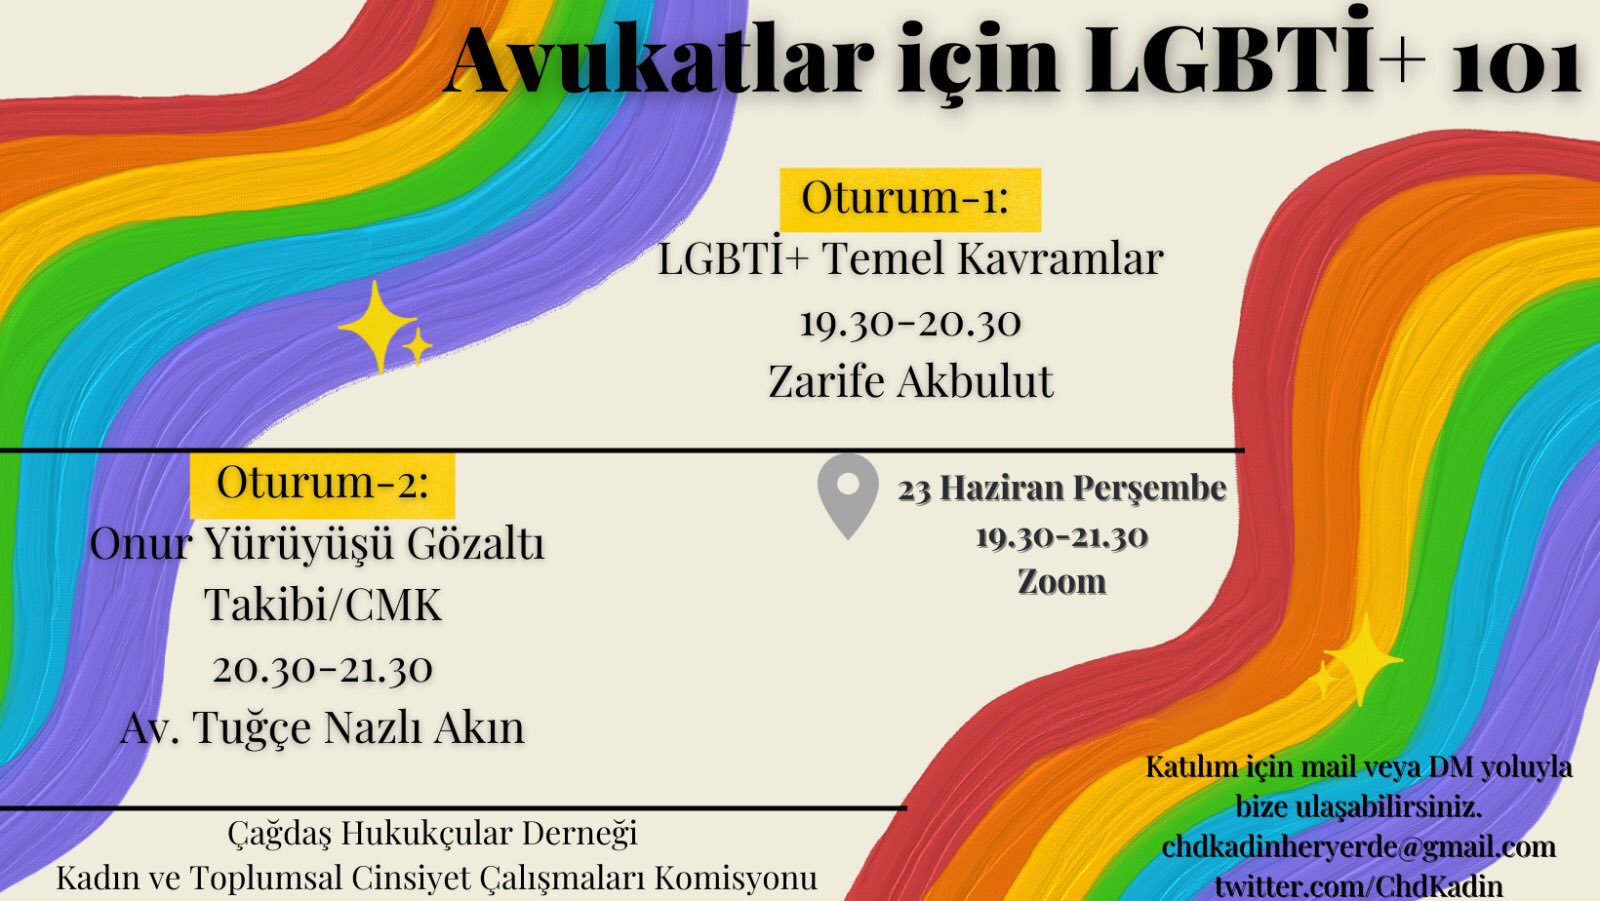 ÇHD’de: Avukatlar için LGBTİ+ 101 Eğitimi Kaos GL - LGBTİ+ Haber Portalı